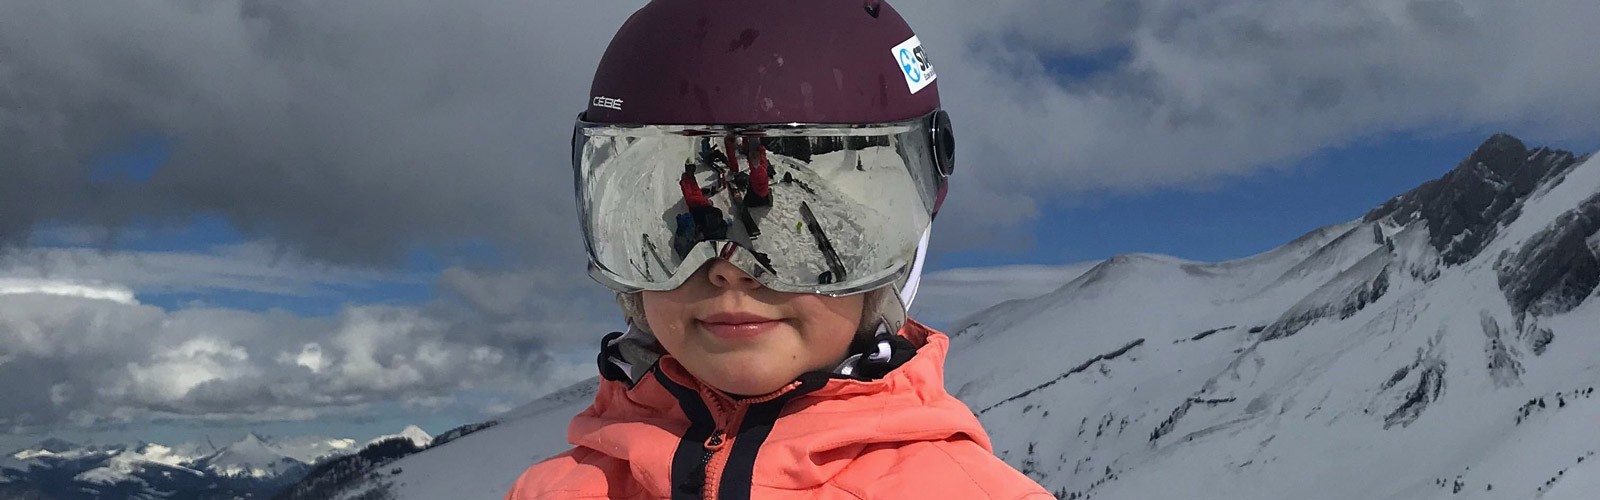 Comment bien choisir le casque de ski de son enfant ? - Les Petits  Baroudeurs